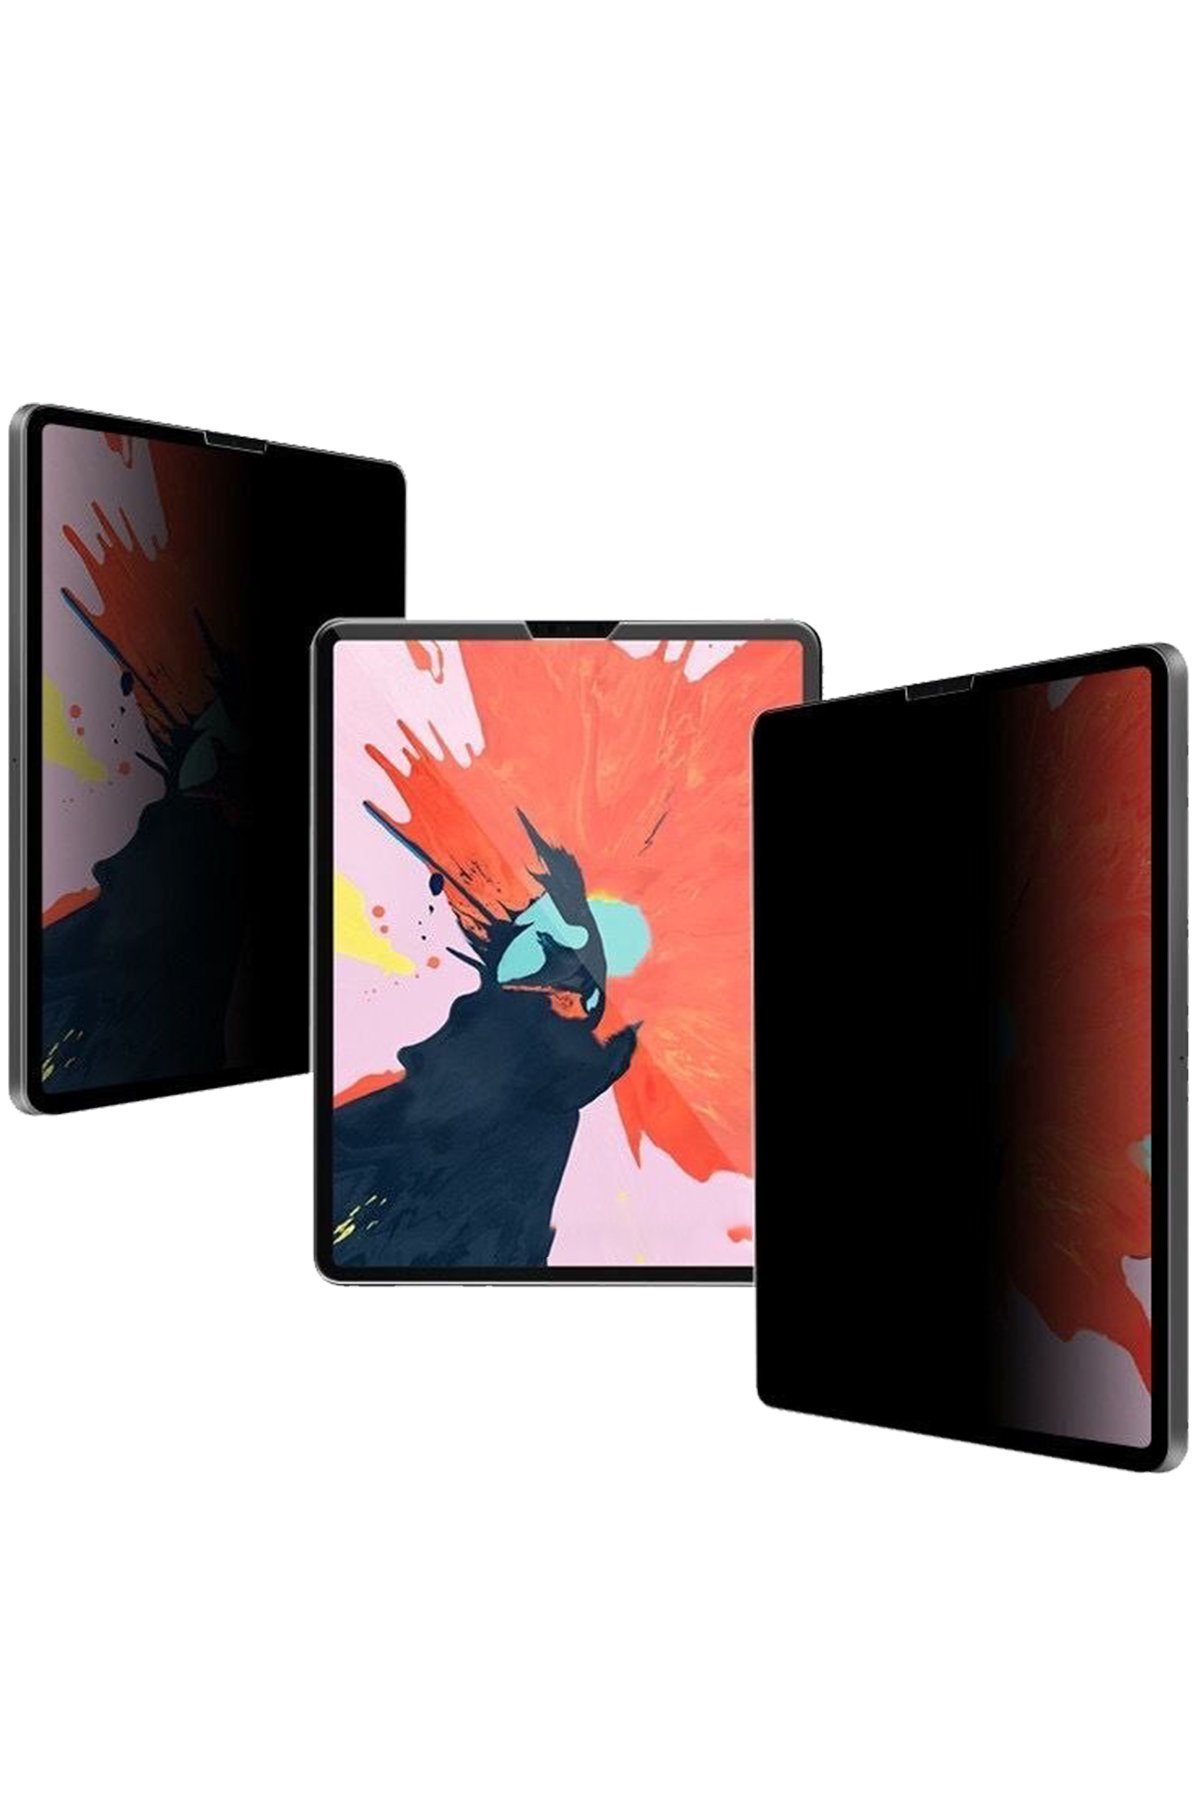 Newface iPad Pro 12.9 (2020) Kılıf Kalemlikli Hugo Tablet Kılıfı - Rose Gold